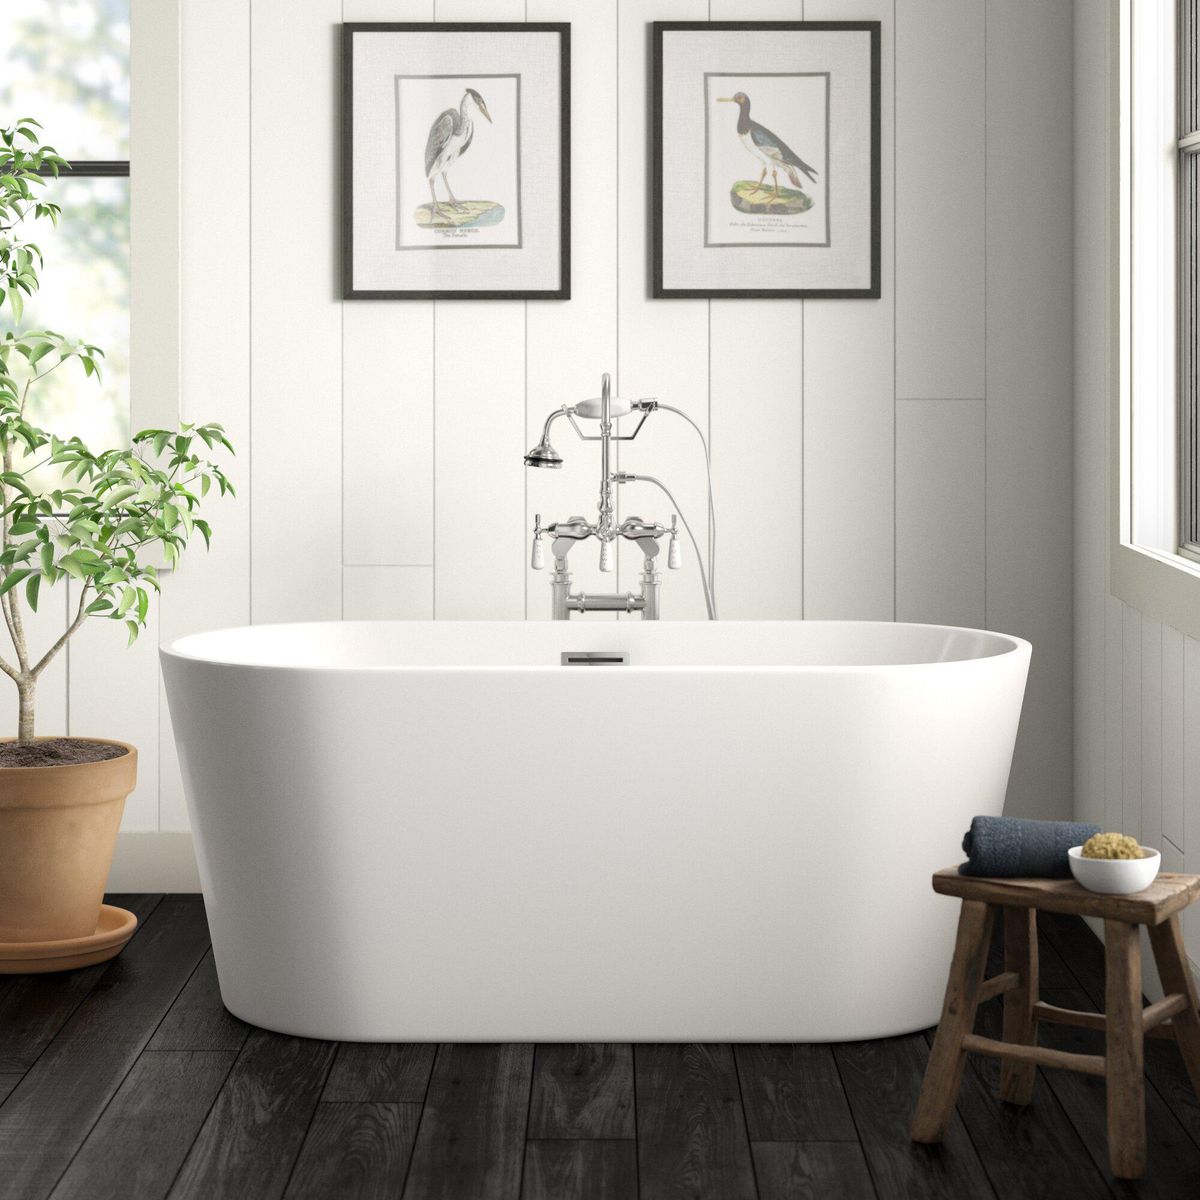 59” x 30” Freestanding Soaking Acrylic Bathtub